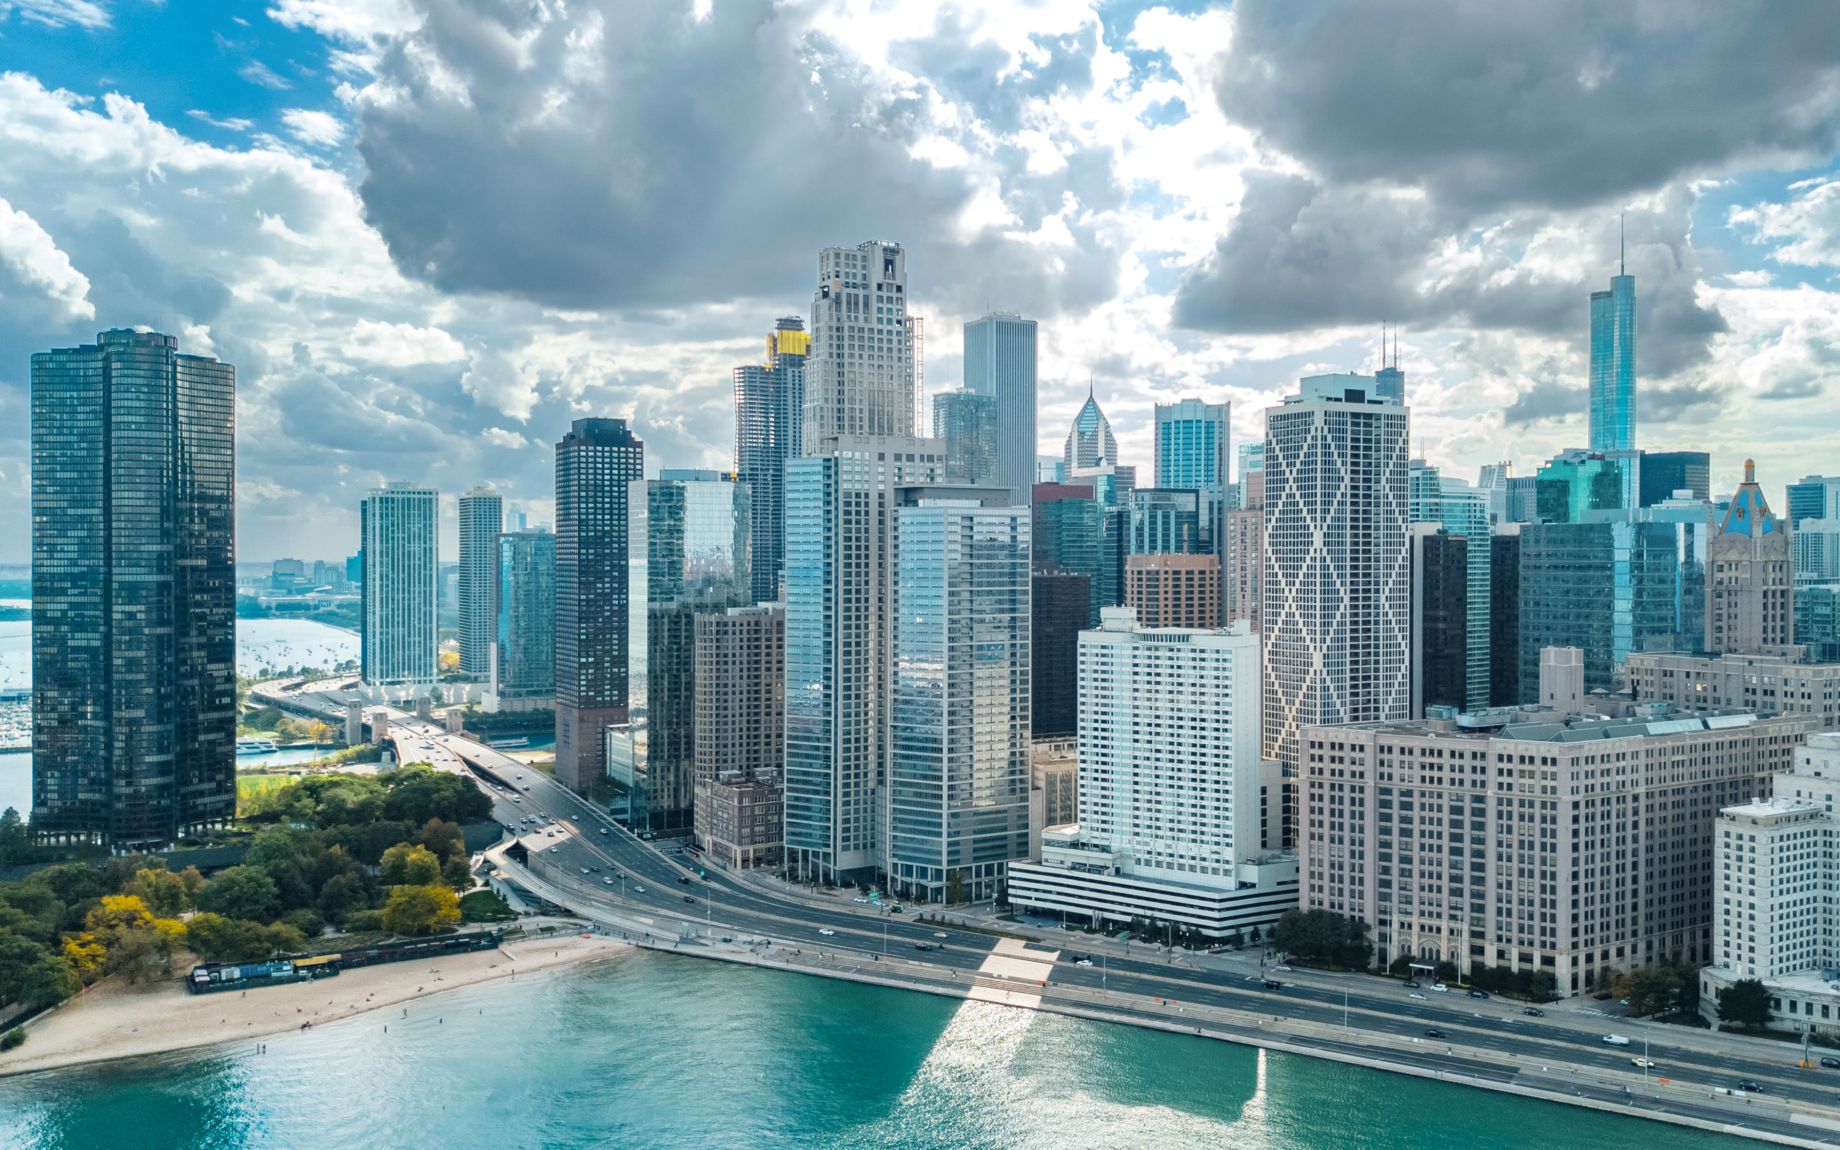 2021年8月全球期货中心、摩天鼻祖、风城——芝加哥（Chicago）最新航拍